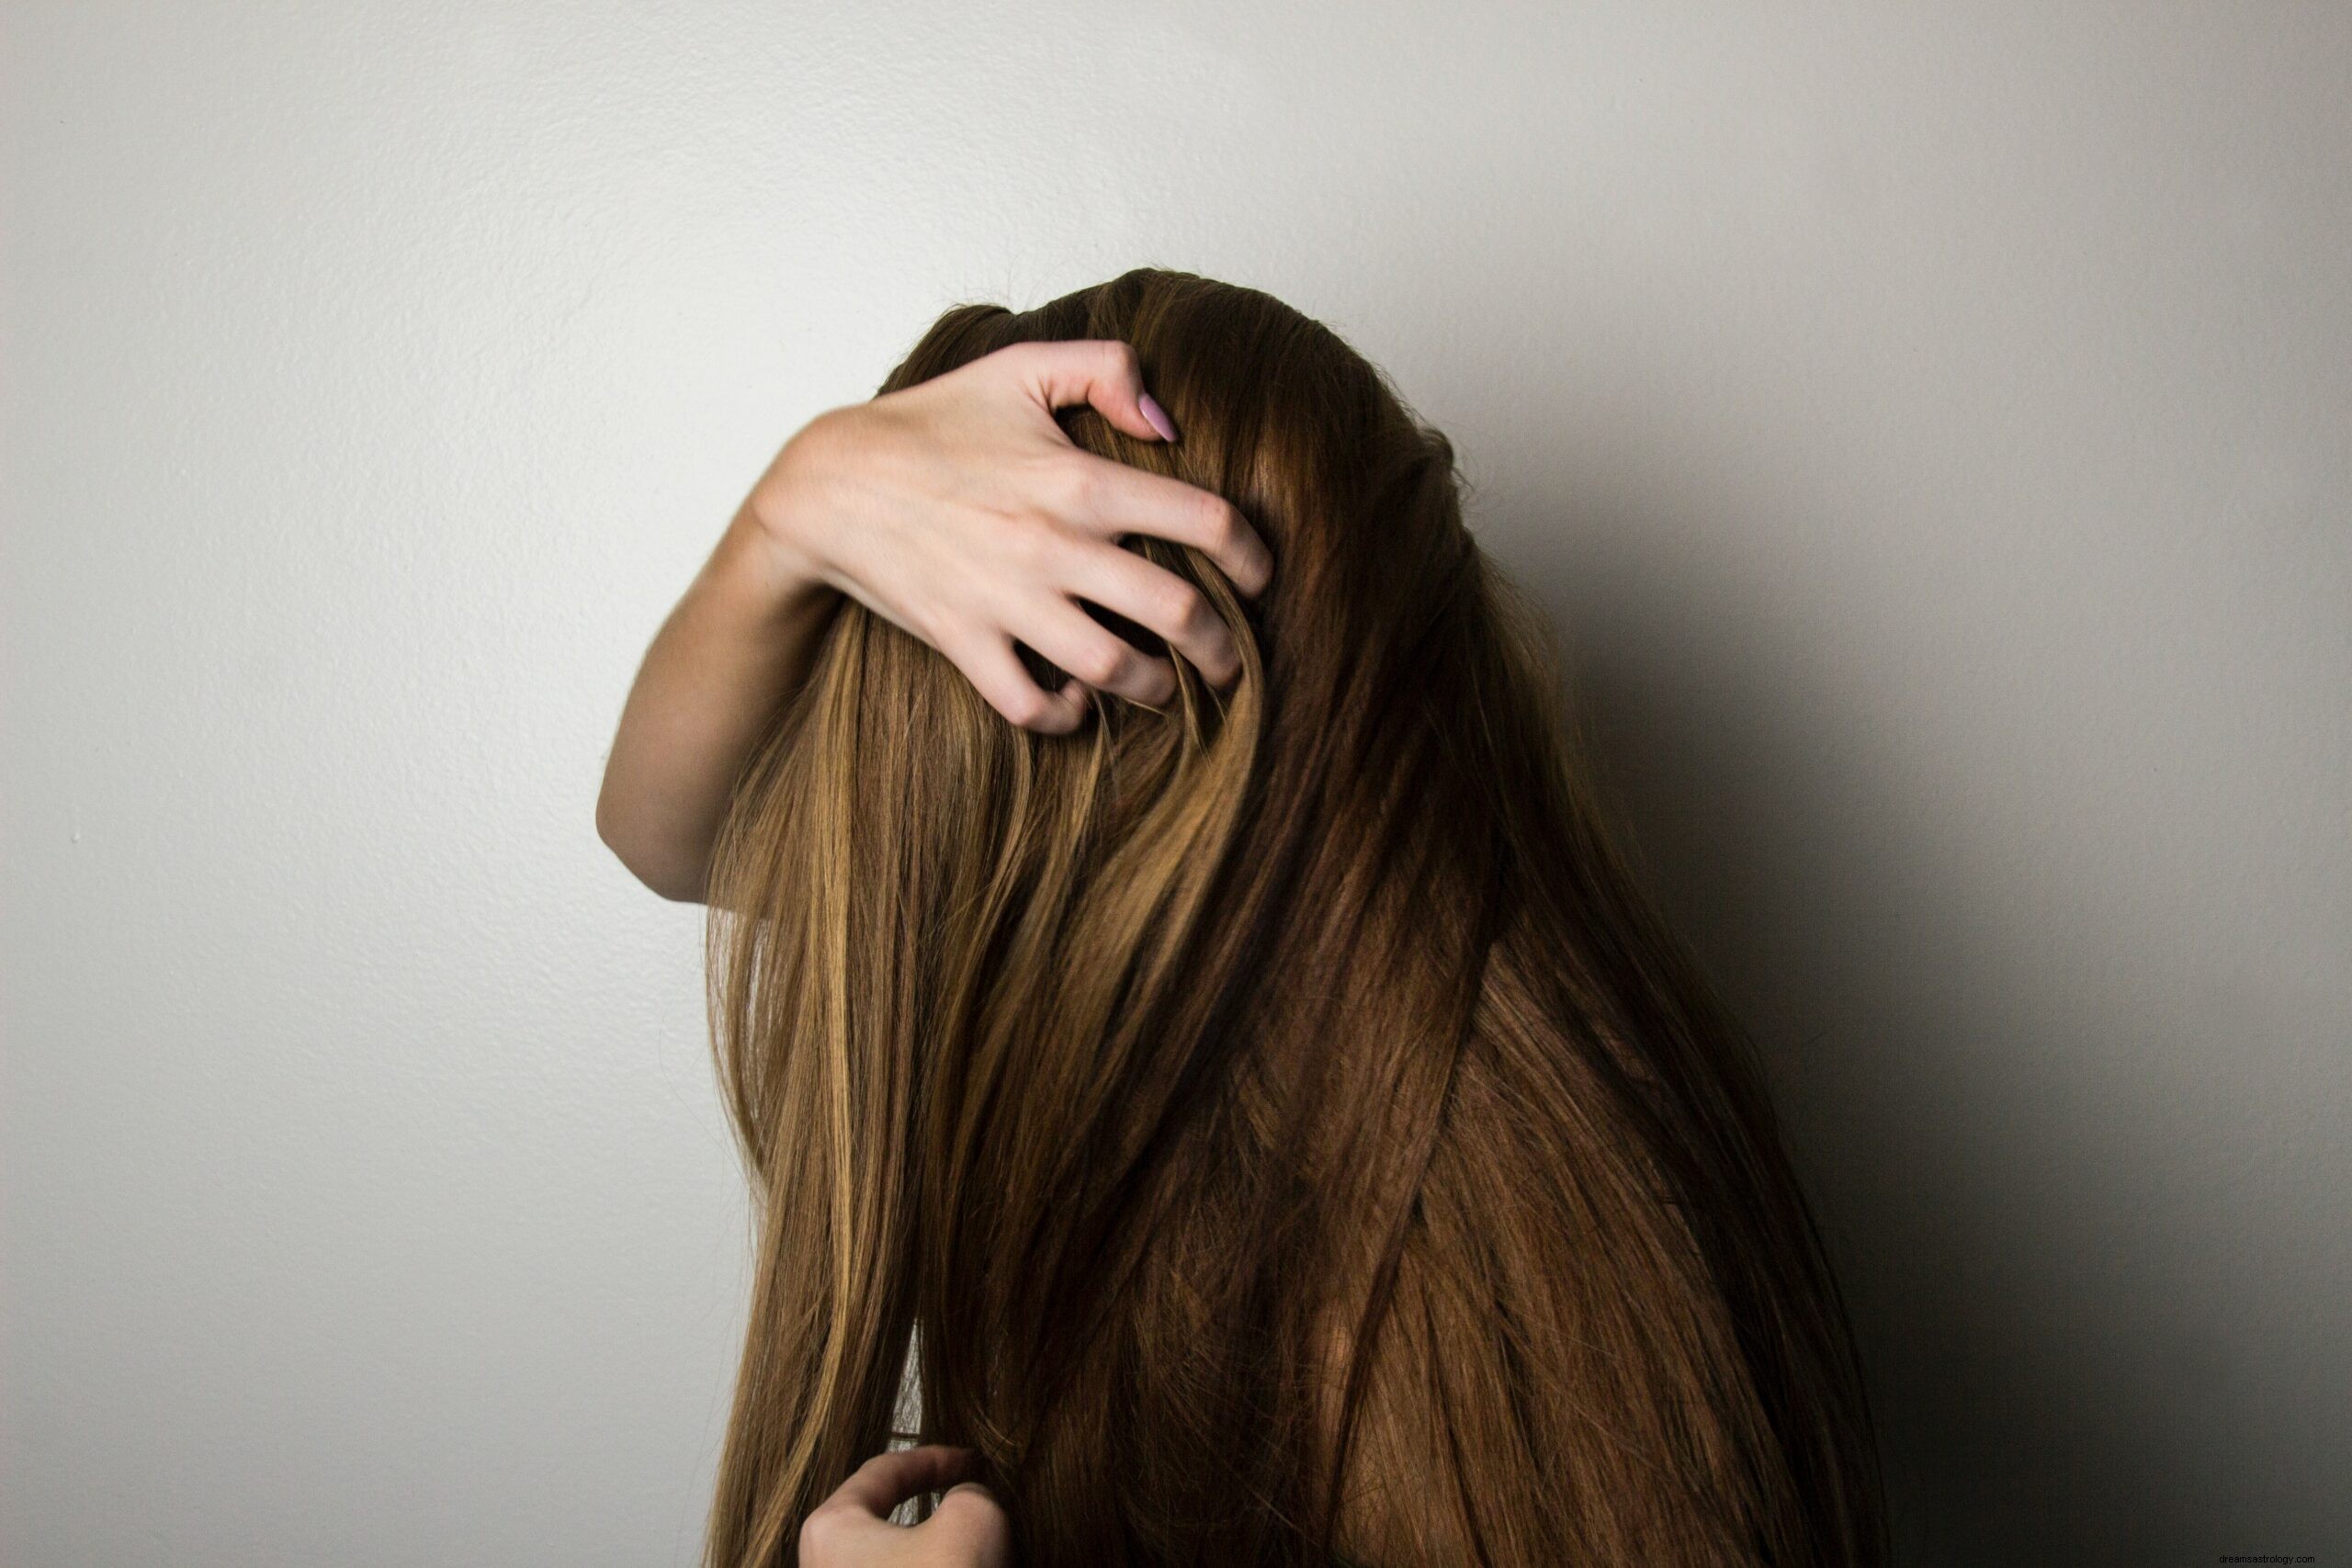 O significado e a interpretação da perda de cabelo em um sonho